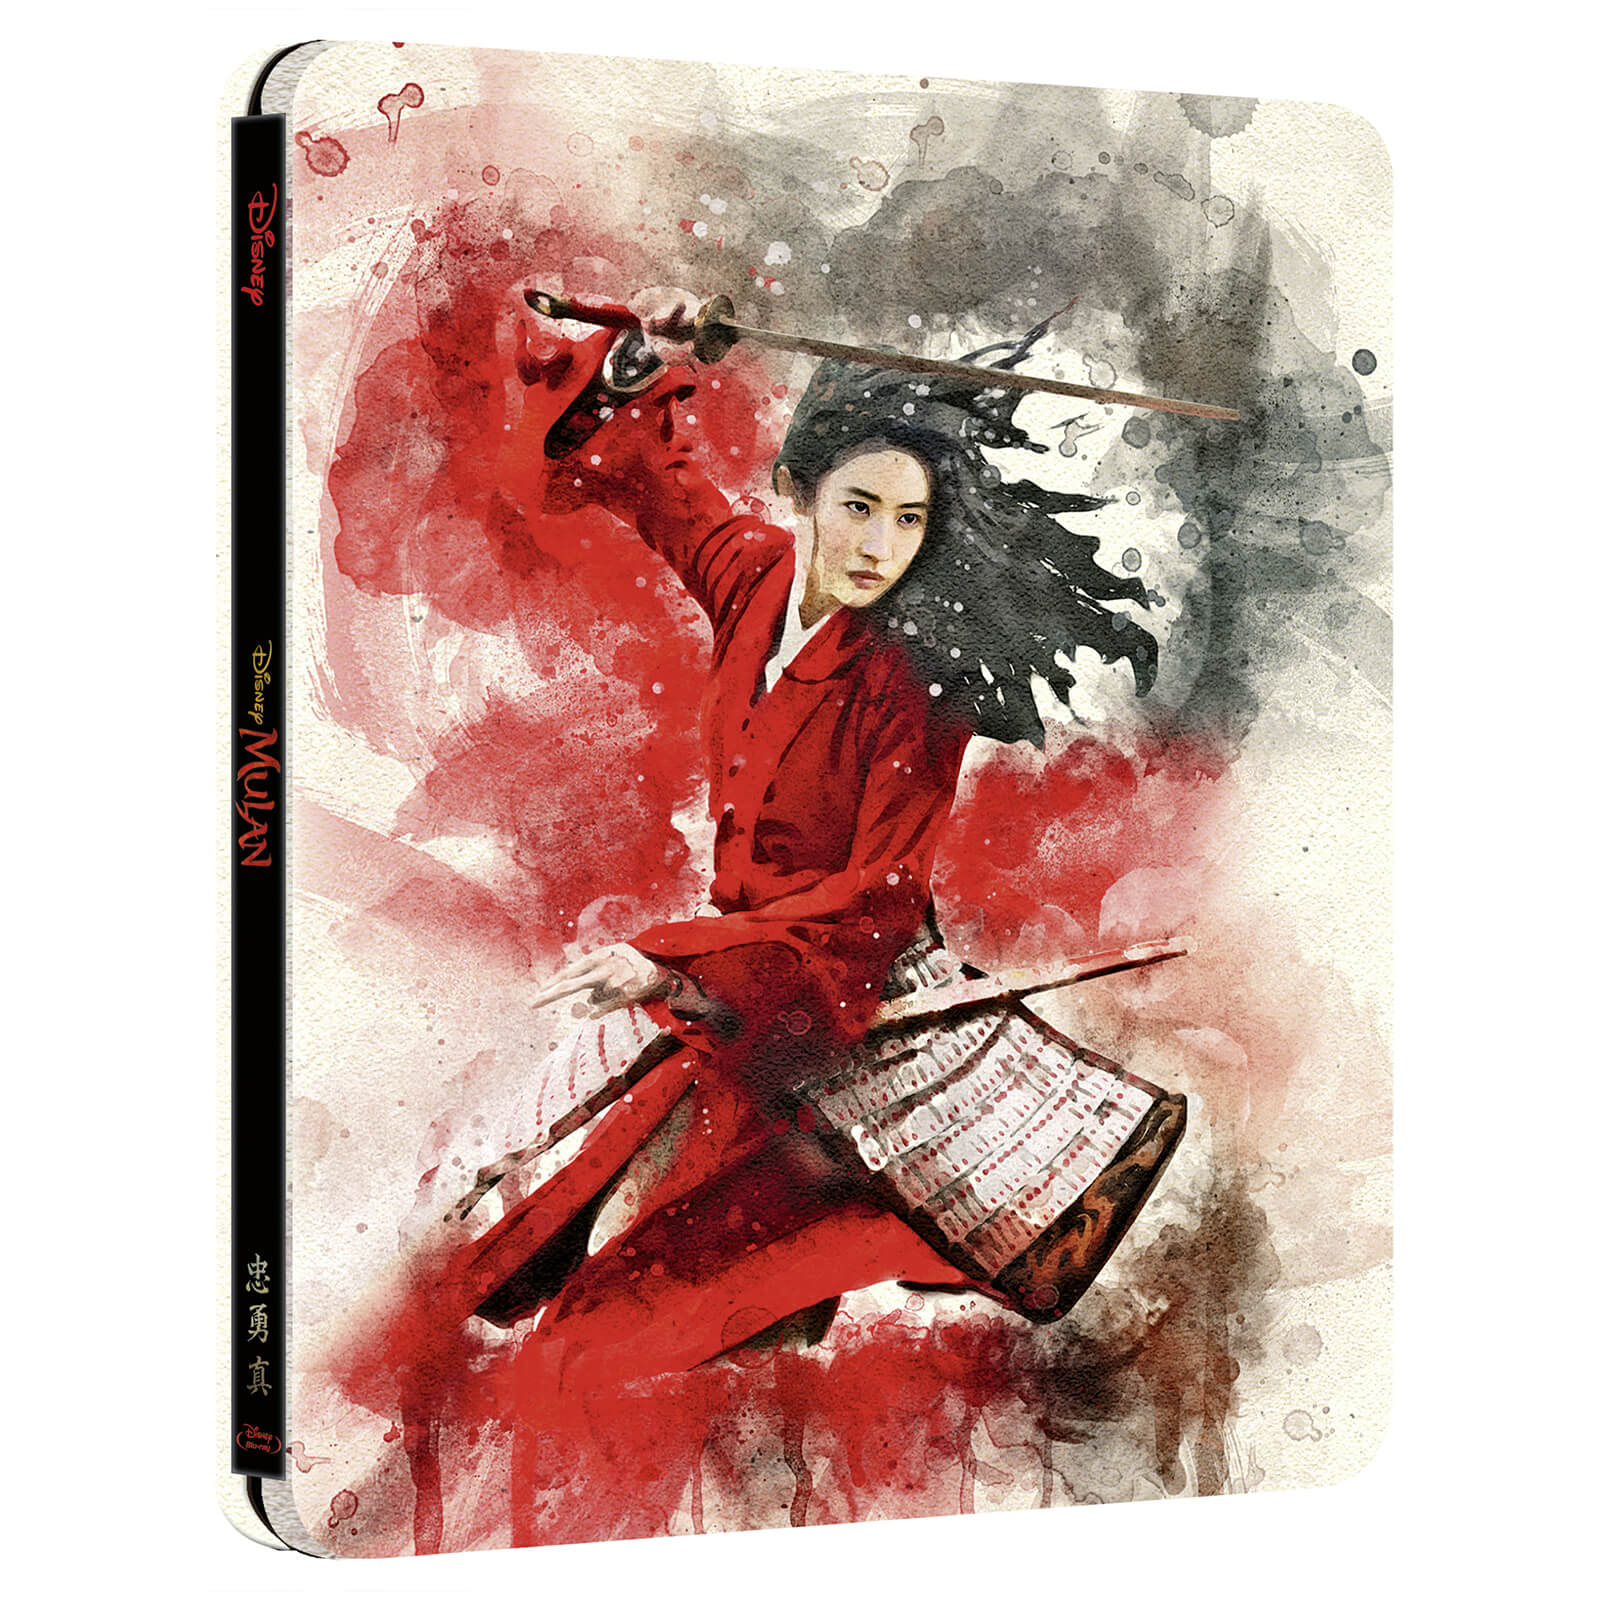 Mulan-steelbook-6.jpg